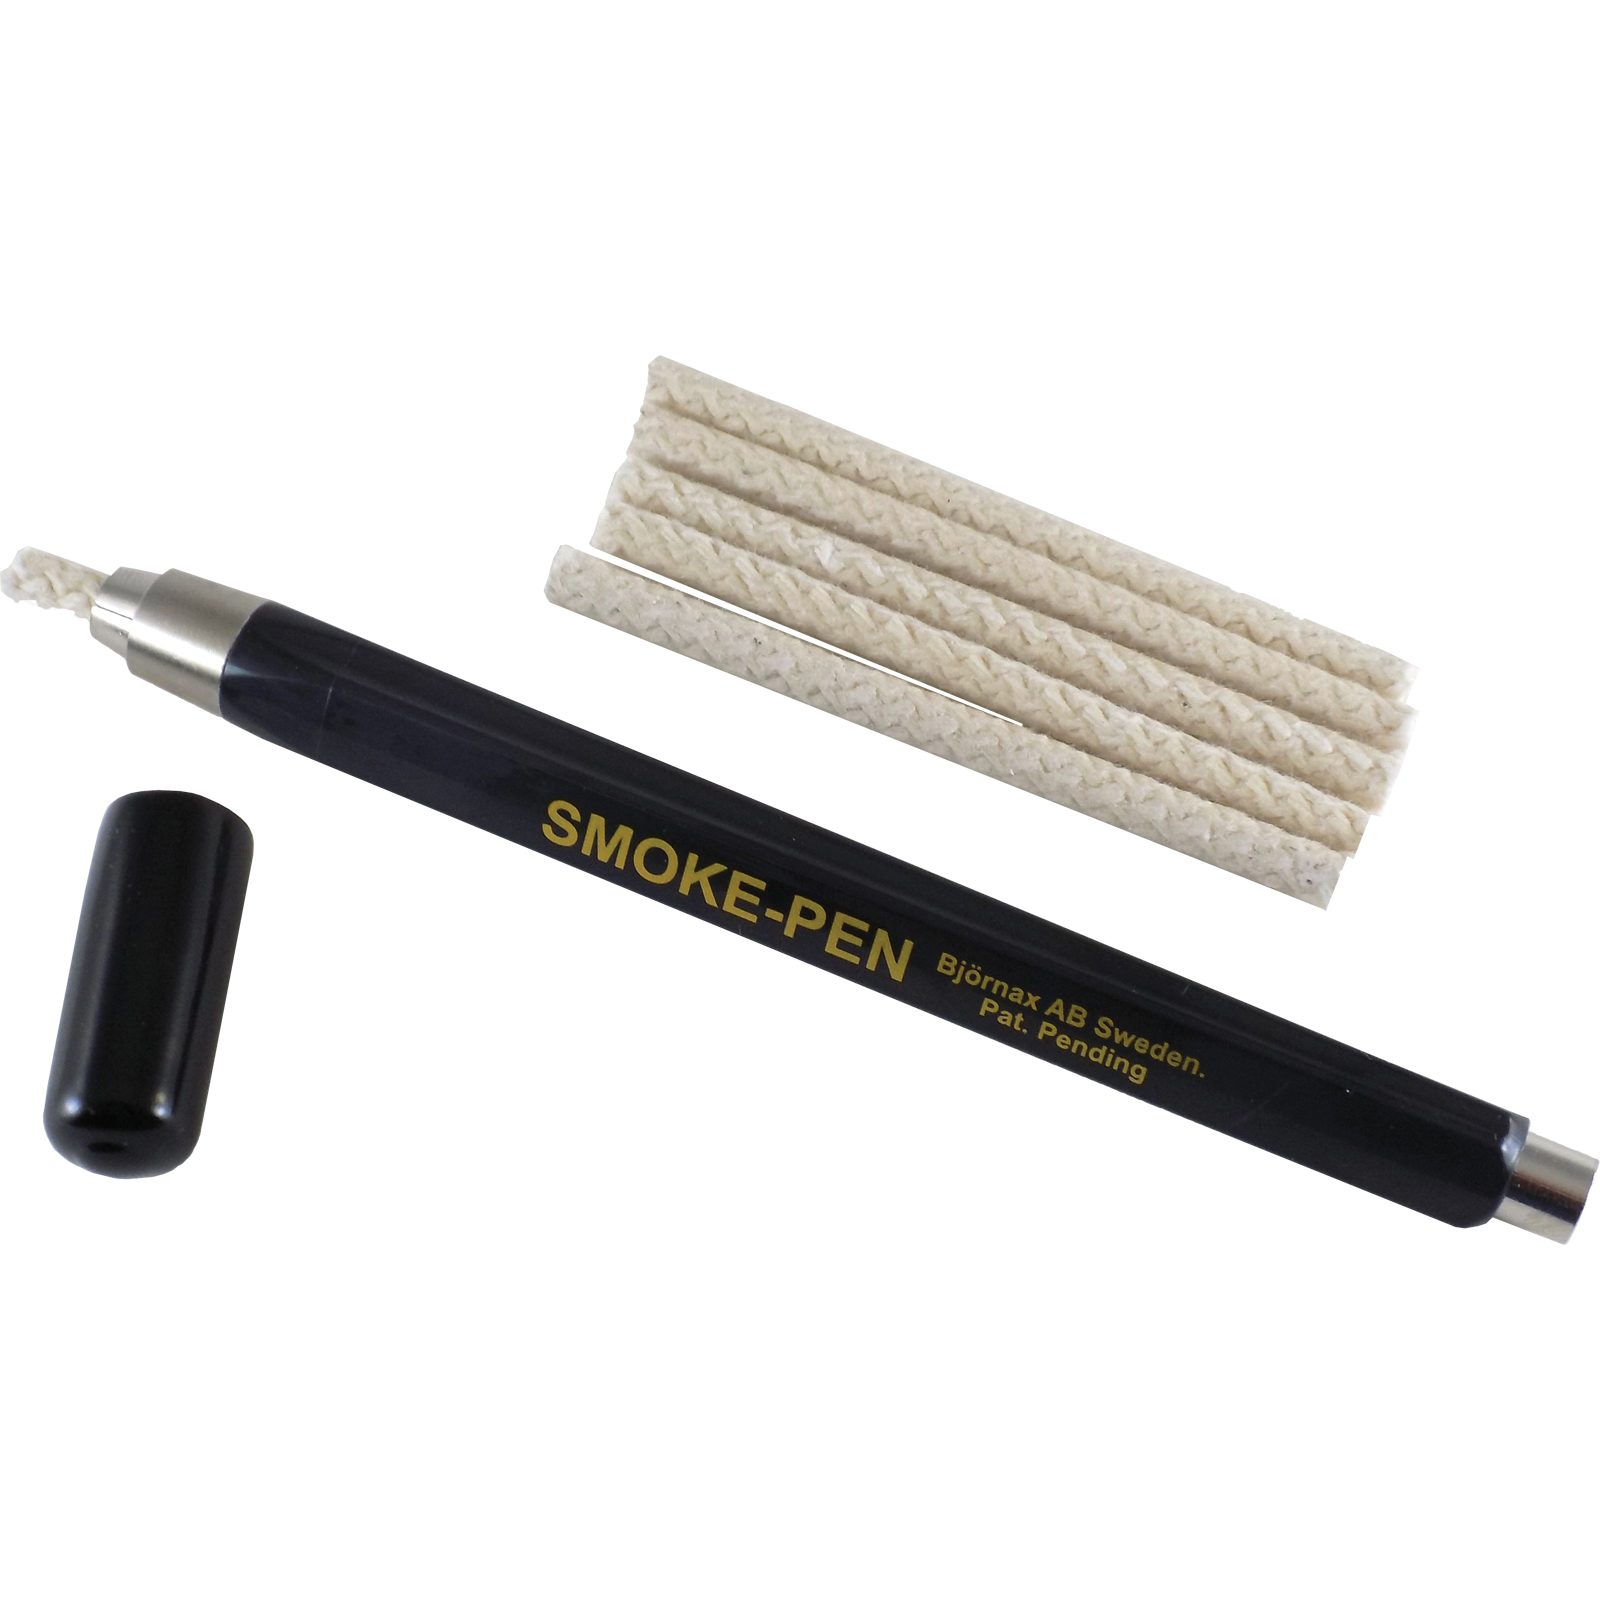 BRAMEC® 19629 Smoke Pen with 6-Wicks, 4 x 9 x 1-1/4 in